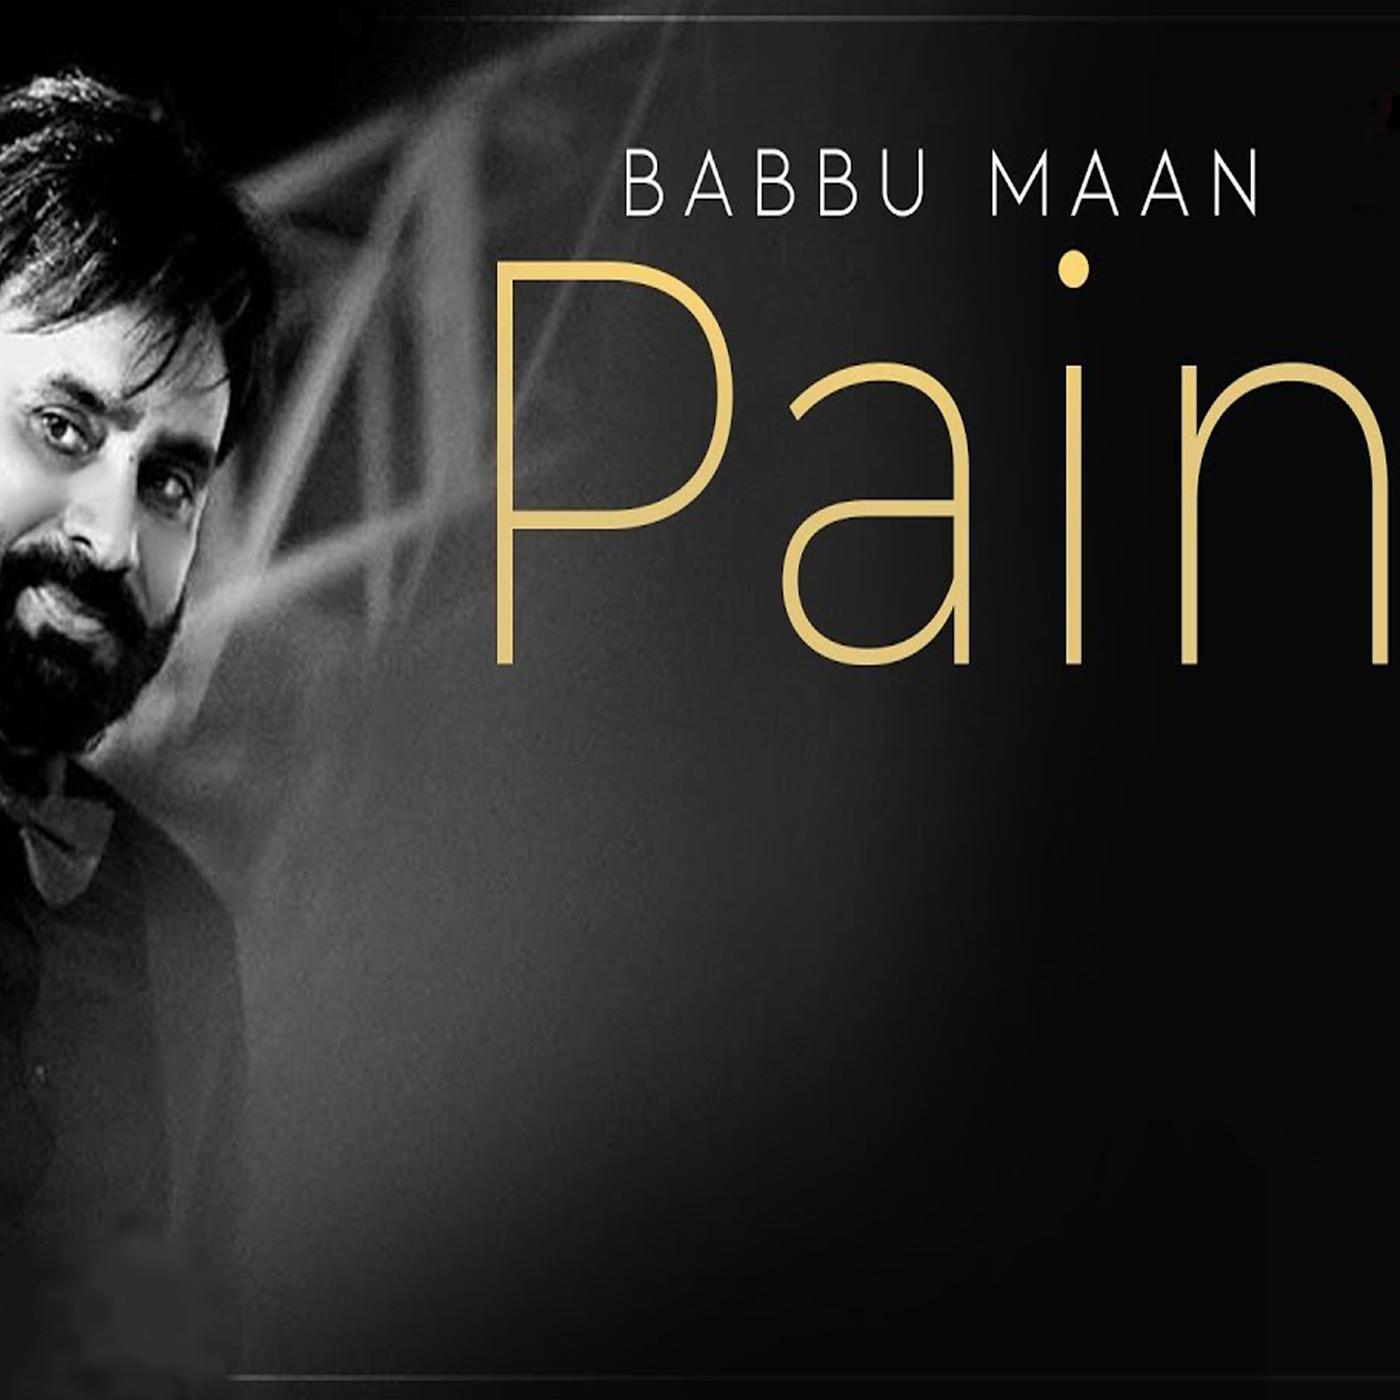 Pain (Babbu Maan)